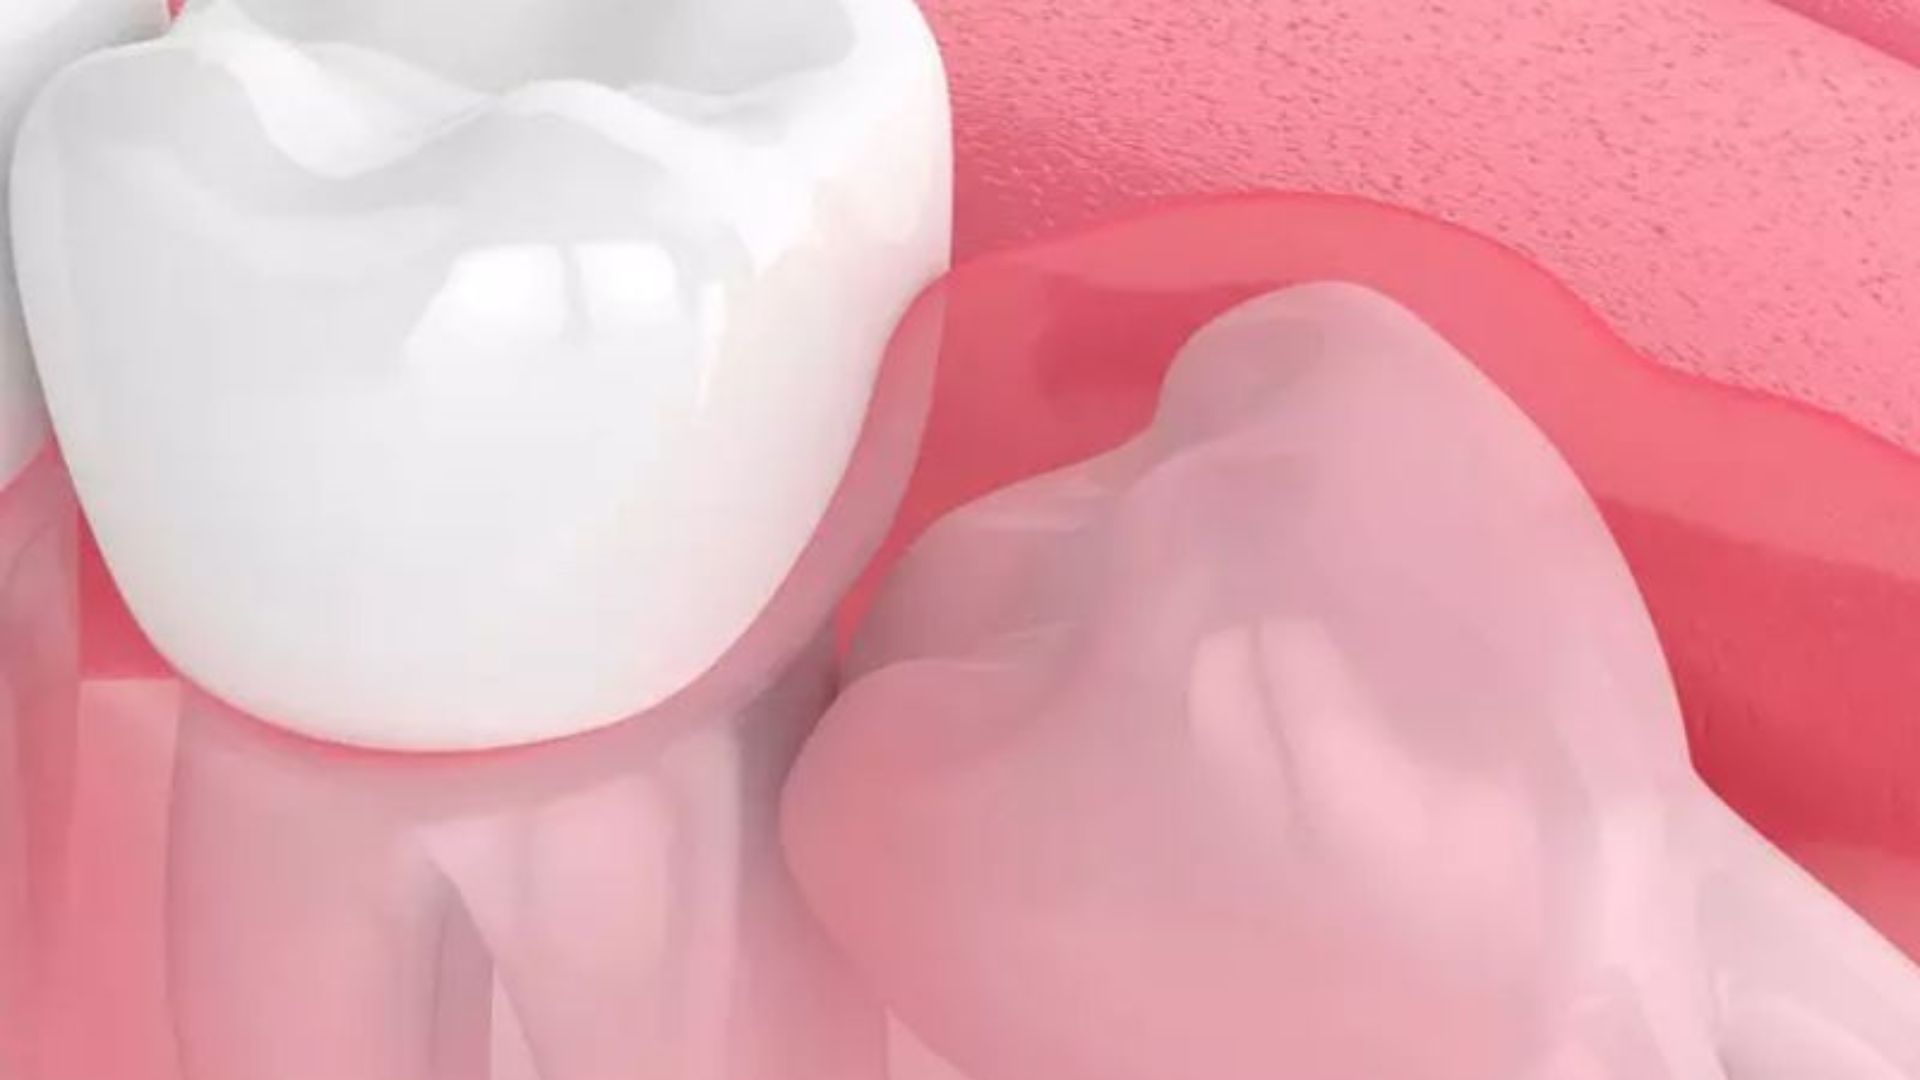 cắt lợi trùm răng khôn - 3